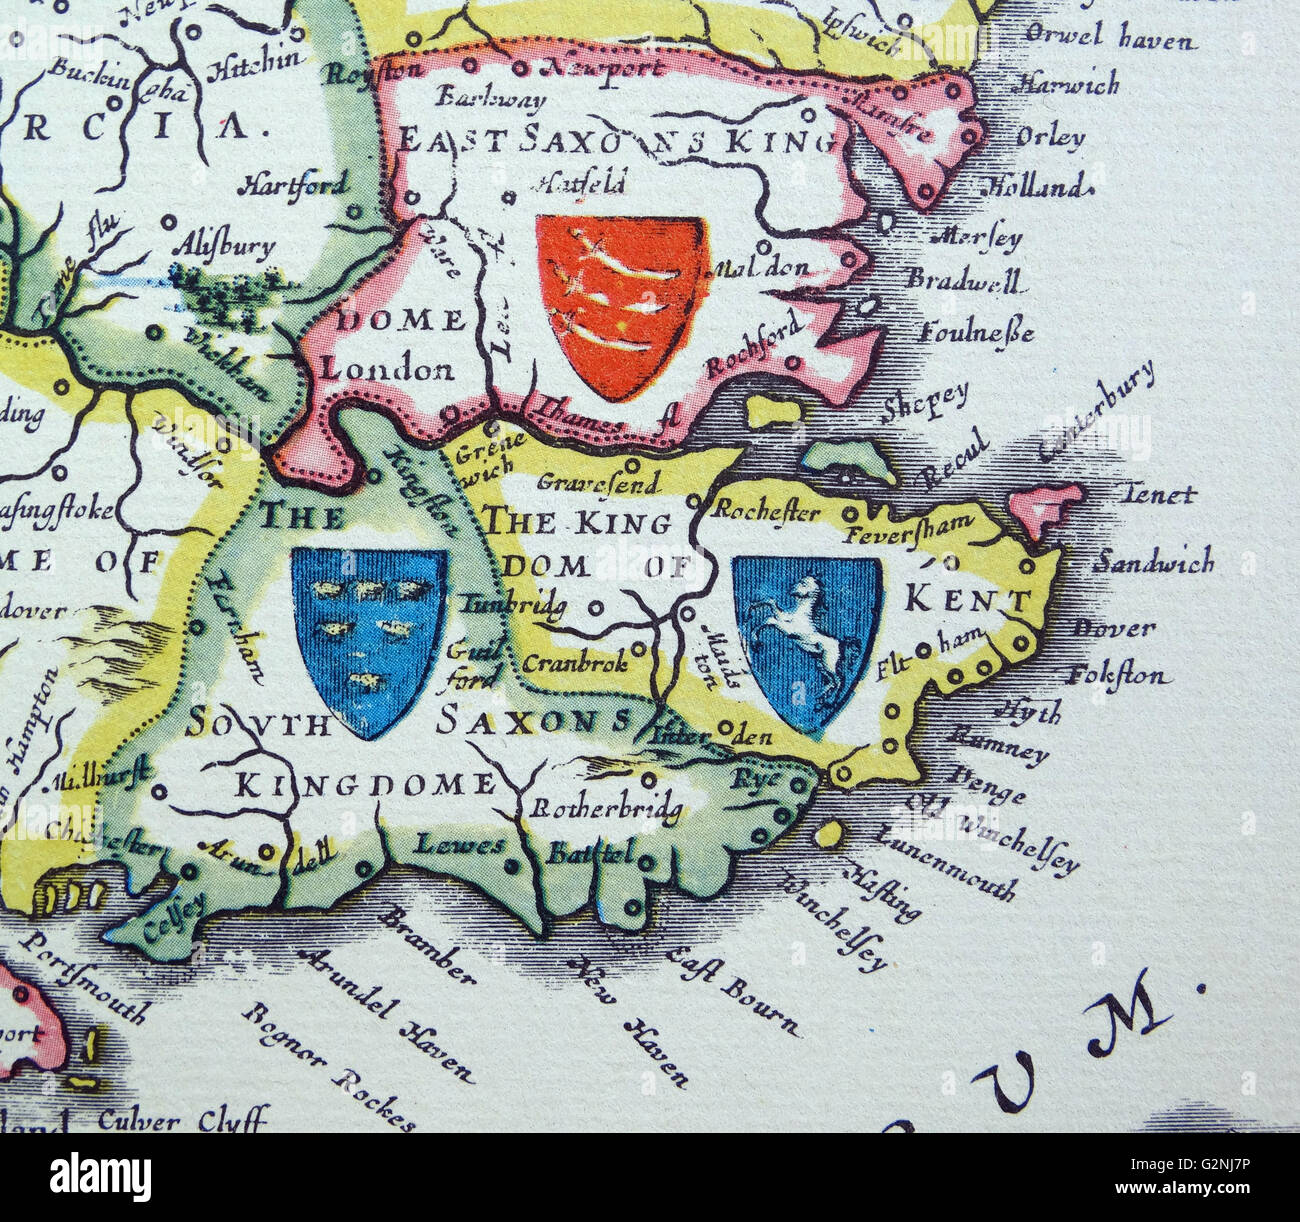 Boucliers de Sussex, Kent et d'Essex de l'Heptarchie ; un nom collectif appliqué à les royaumes anglo-saxons du sud, l'Est, et le centre de l'Angleterre durant l'antiquité tardive et le haut Moyen Age, détail d'une carte antique de la Grande-Bretagne, par le cartographe Hollandais Willem Blaeu Atlas Novus (Amsterdam en 1635) Banque D'Images